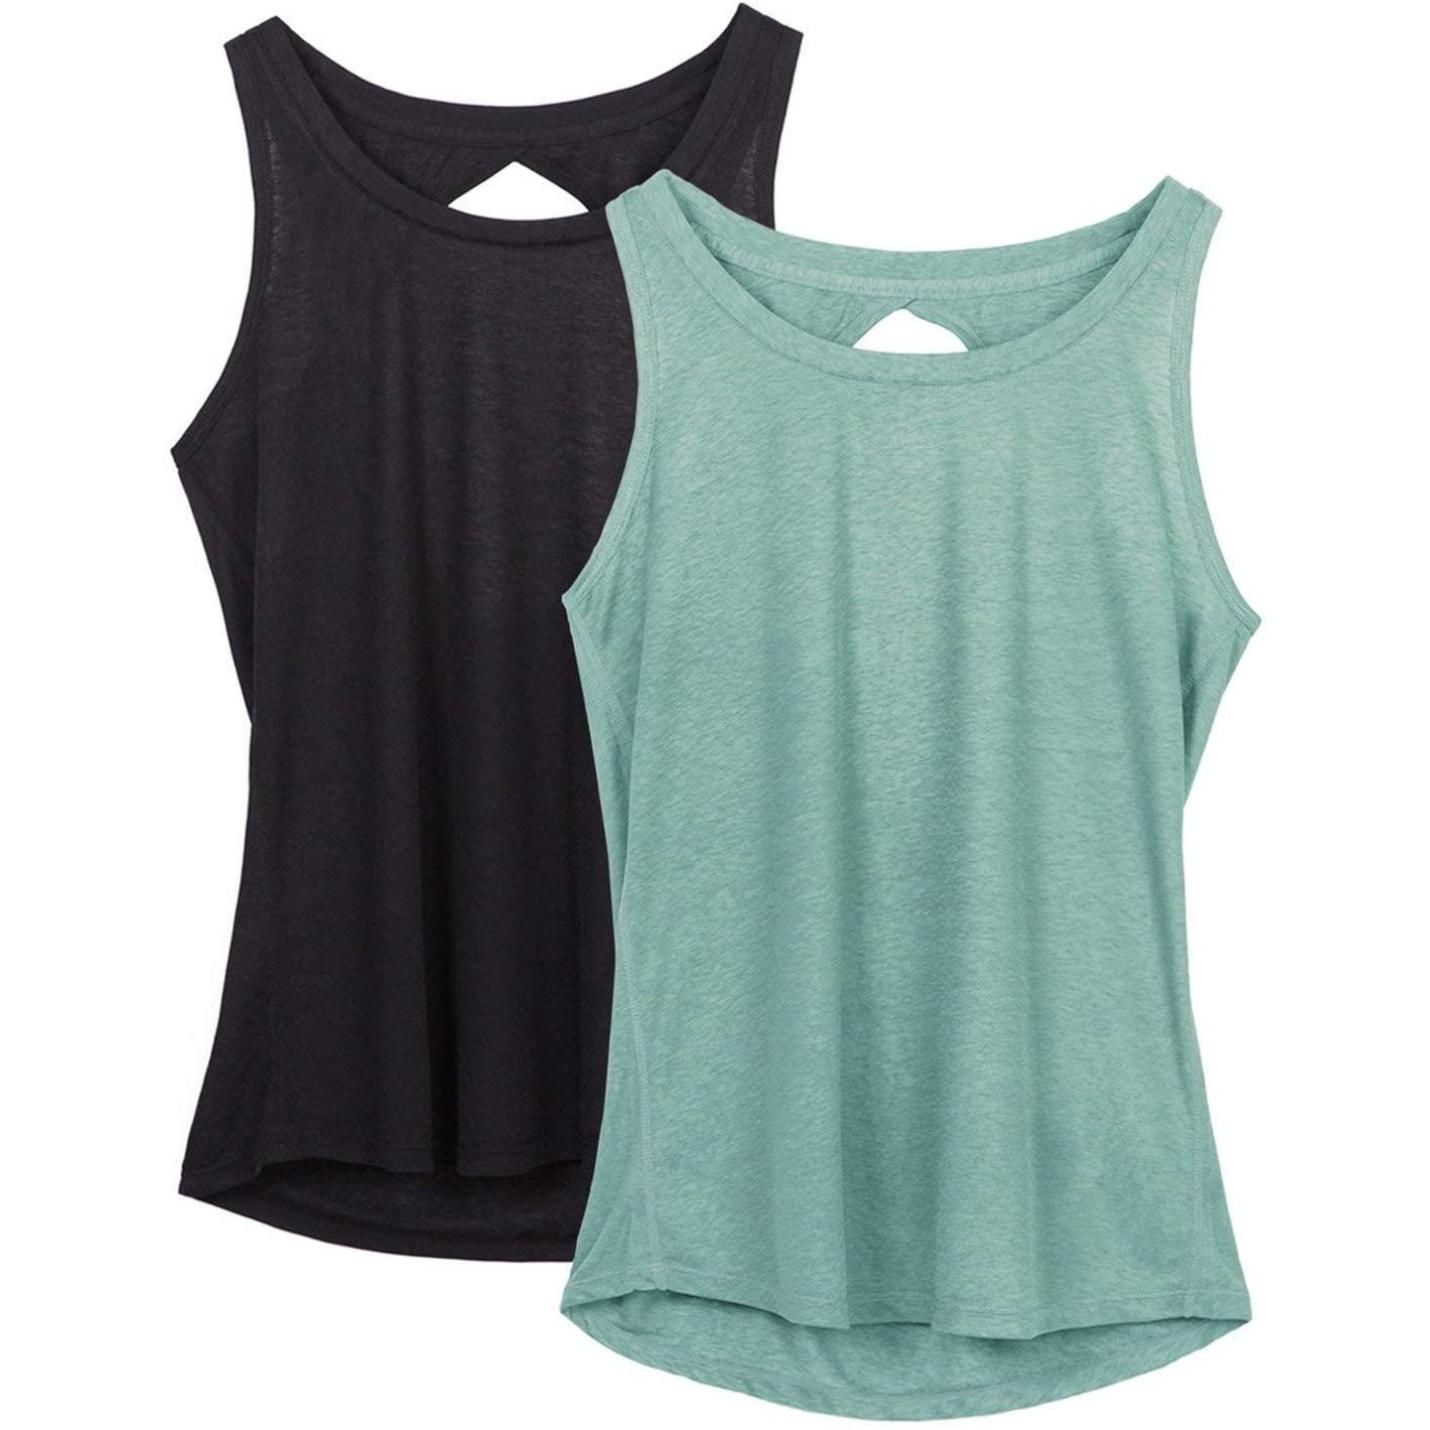 Dames Yoga Sport Tank Top Rugvrij Fitness Top Mouwloos Shirts 2 Pack XL  zwartlichtgroen.